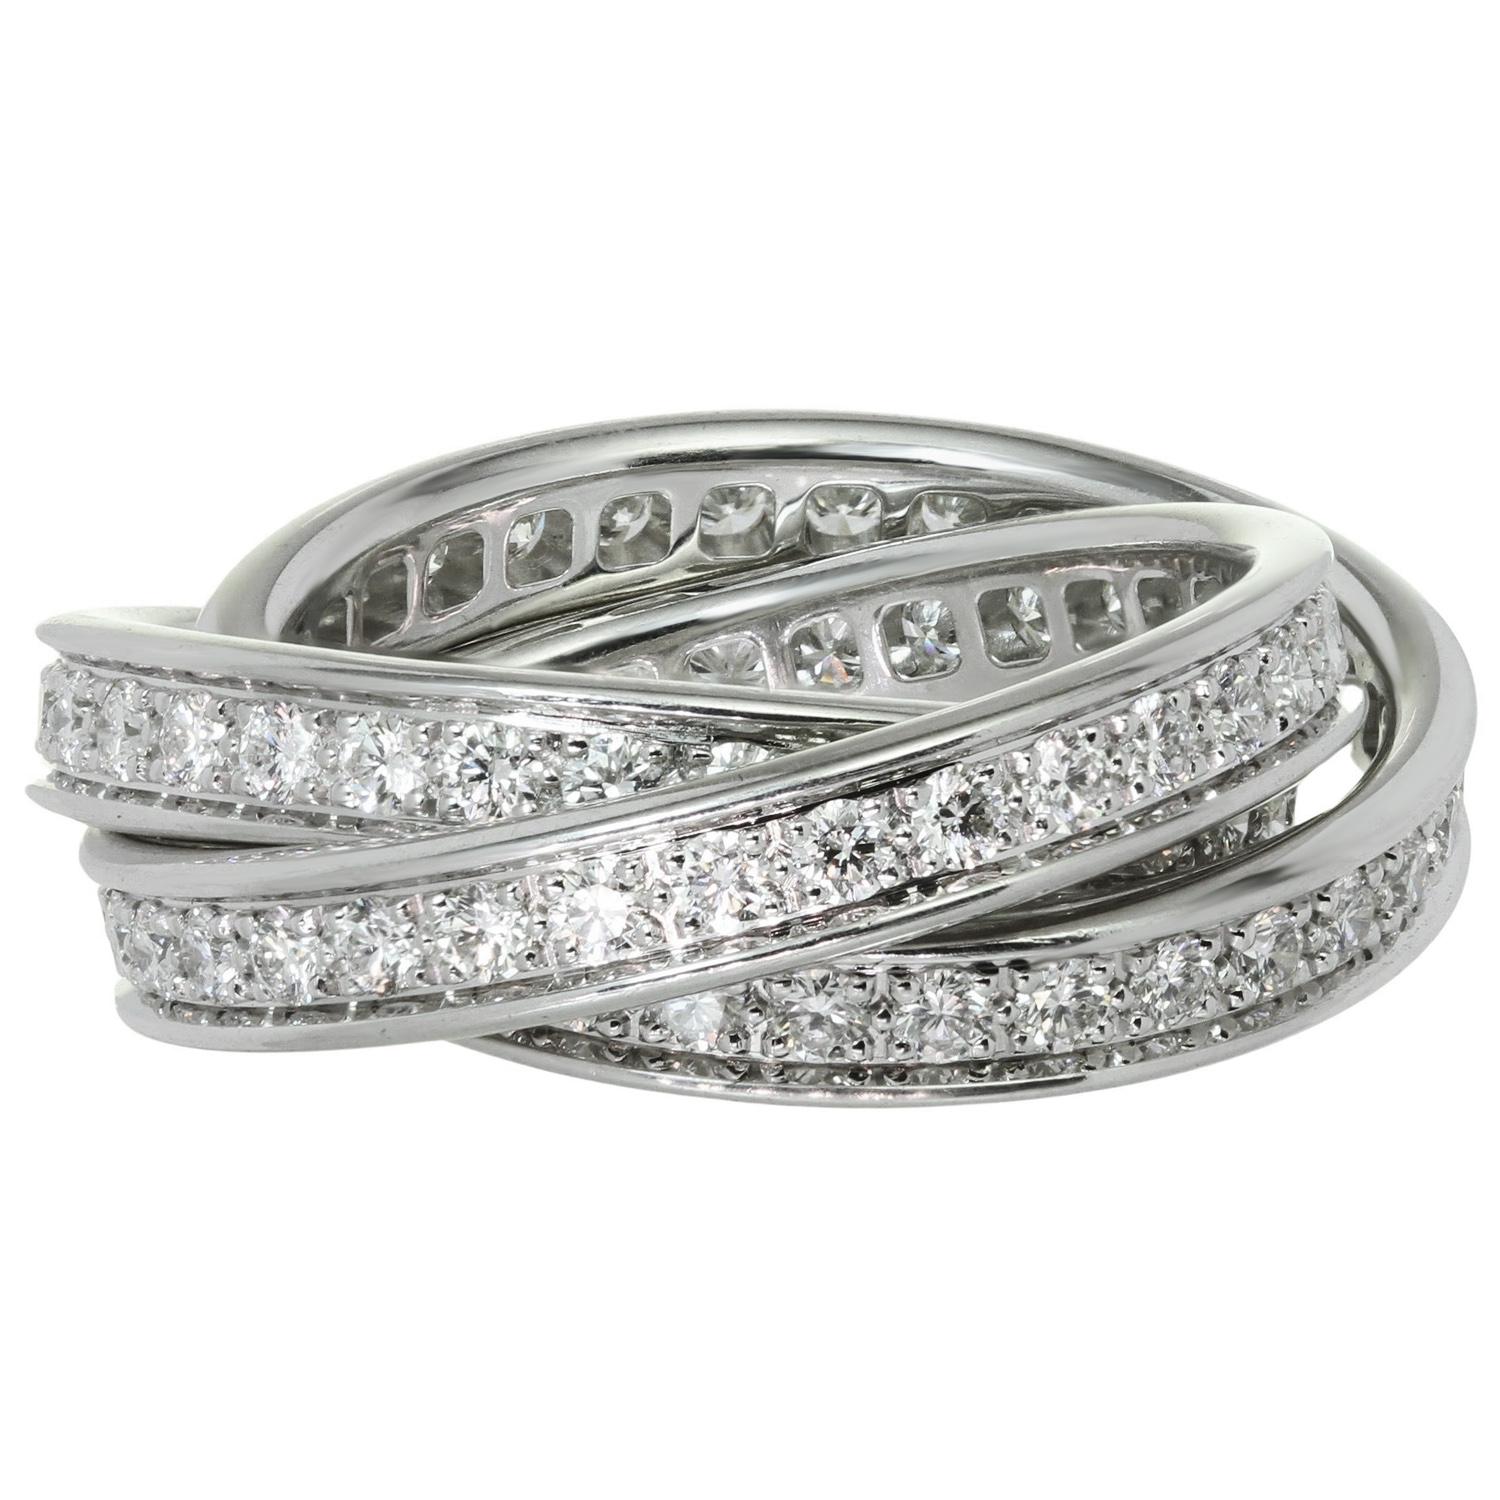 Cette bague emblématique de la collection Trinity de Cartier présente 3 anneaux interconnectés en or blanc 18 carats et sertis de diamants ronds D-F VVS1-VVS2 de taille brillant. Fabriqué en France dans les années 2010. Dimensions : 0,27